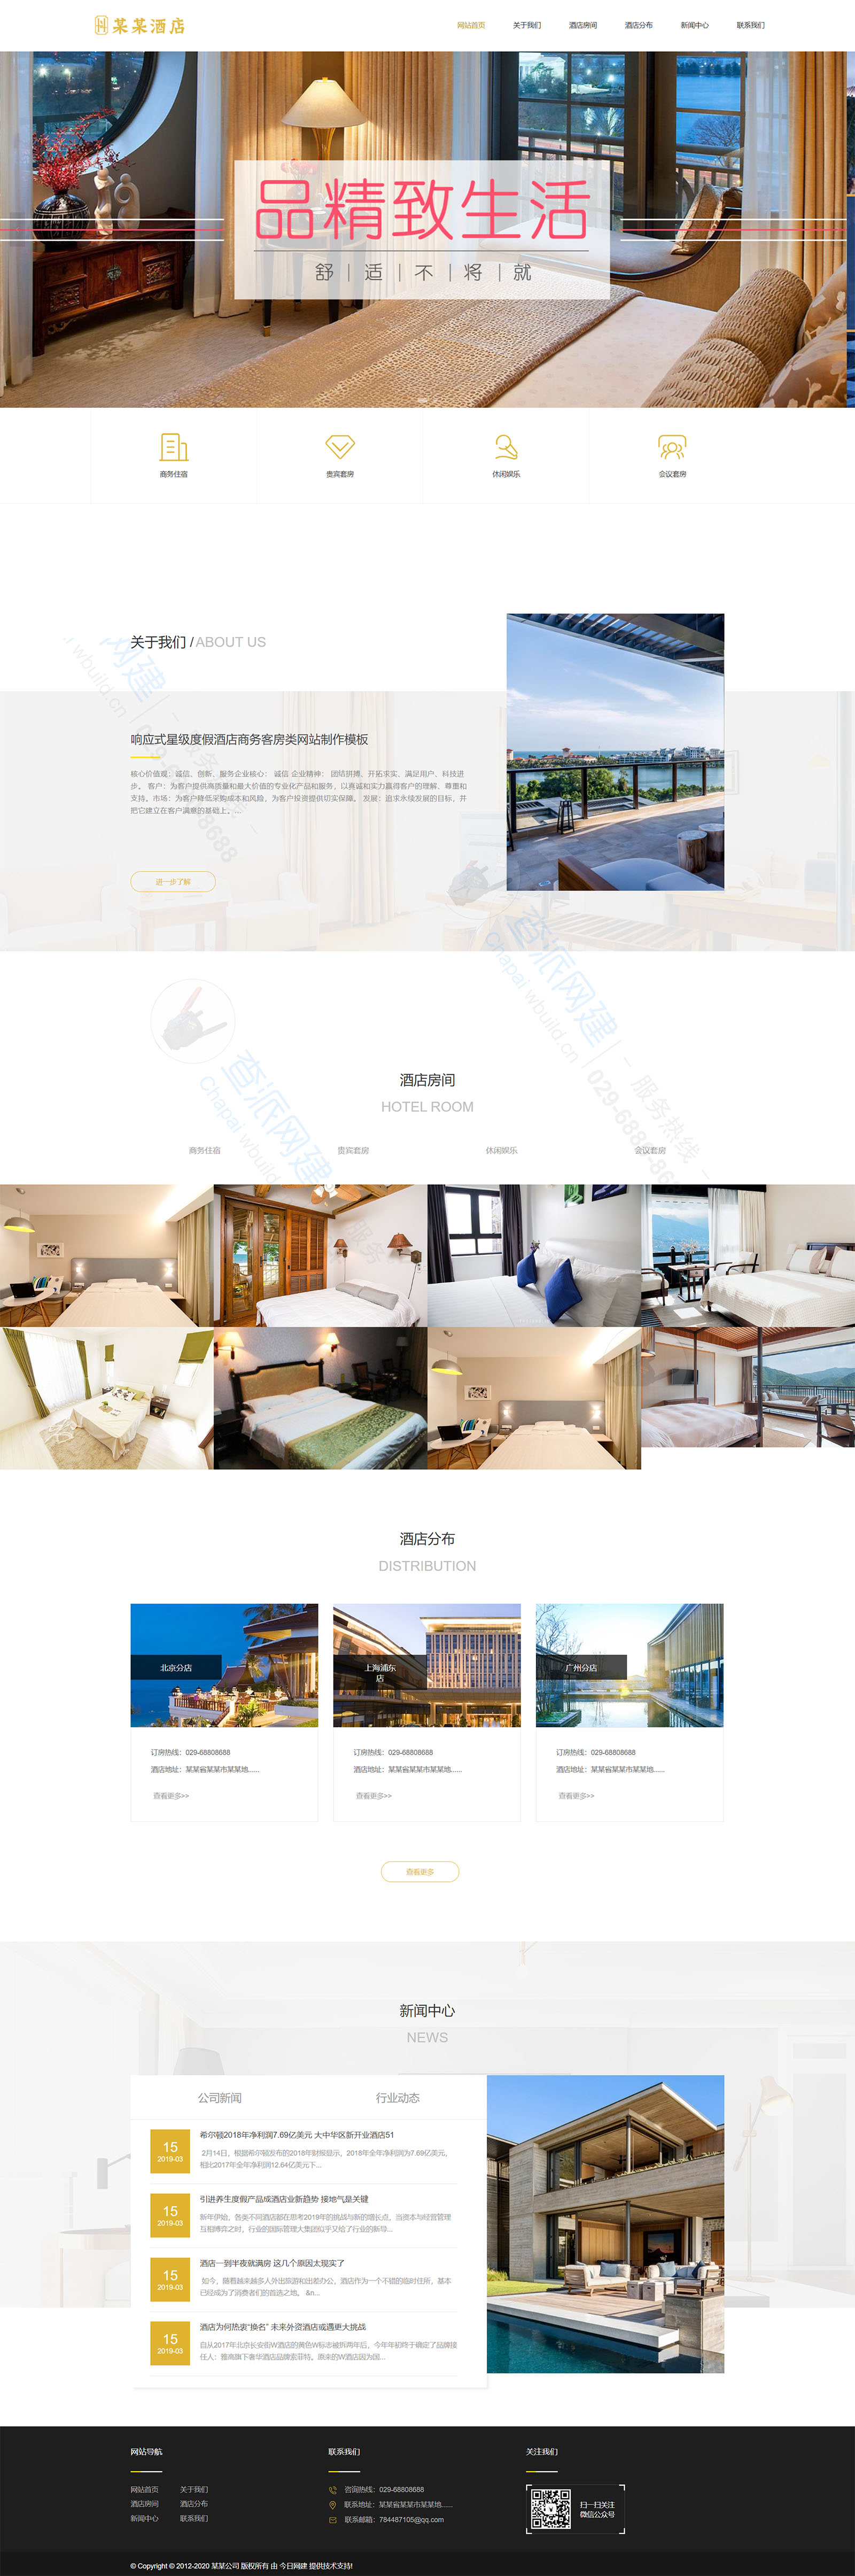 响应式/星级度假酒店/商务客房类网站制作模板